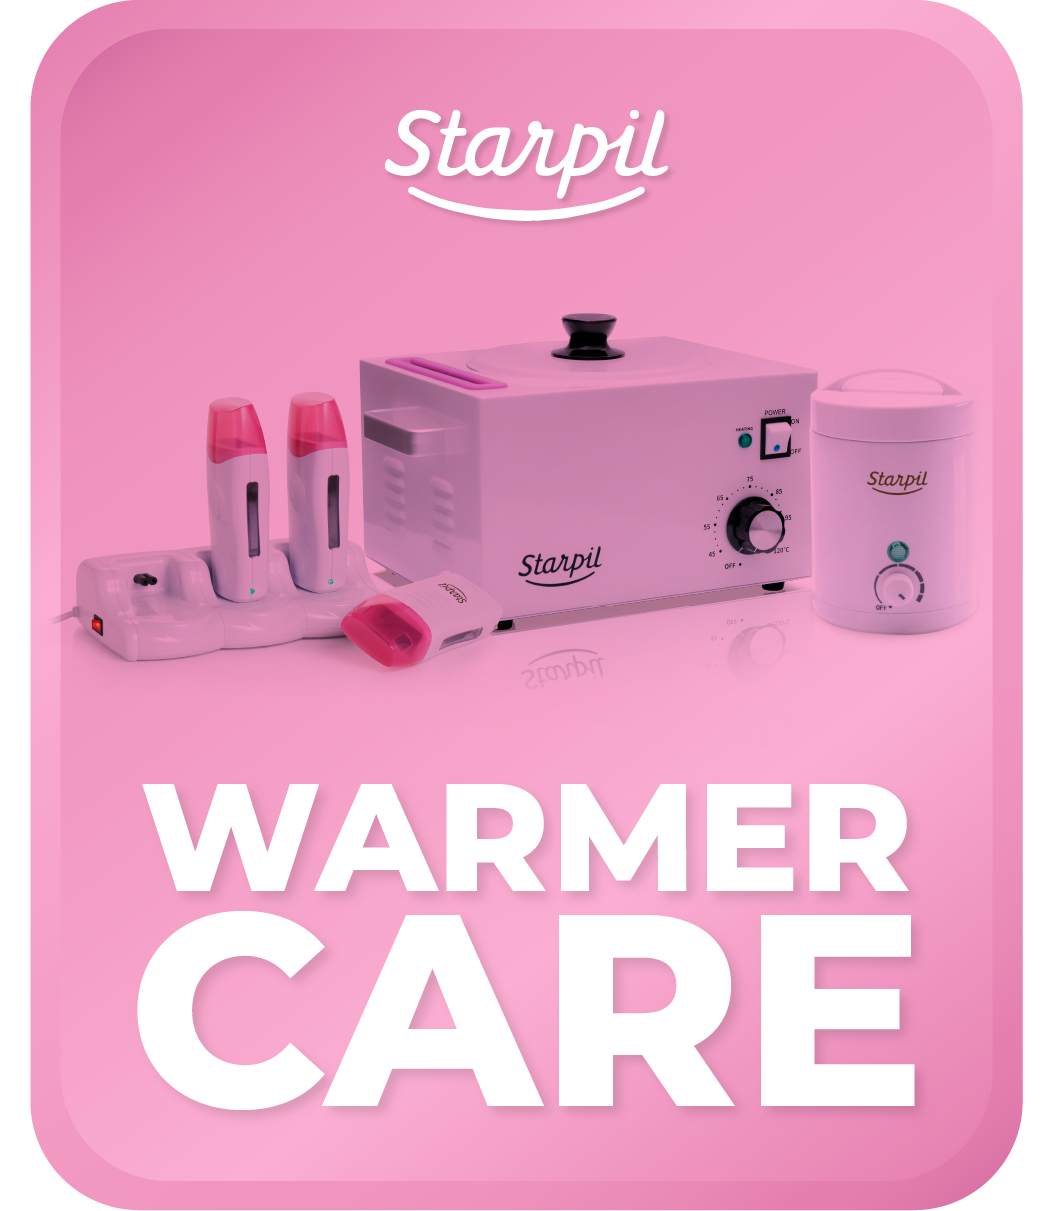 Wax Warmer Care Warranty Program